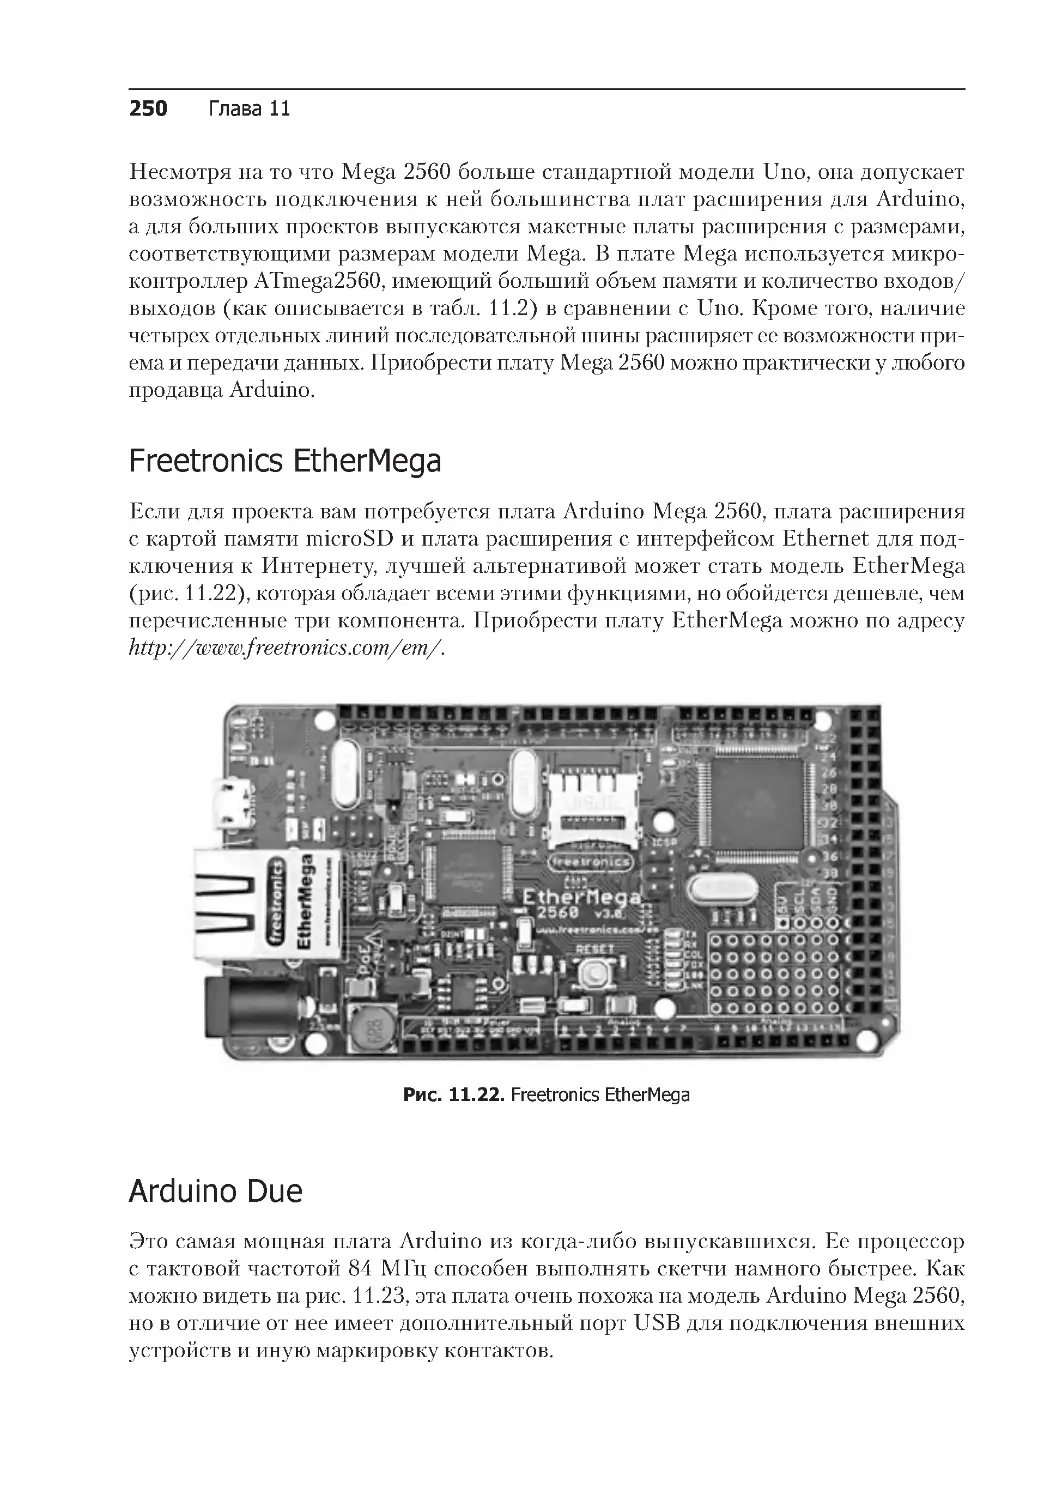 ﻿Freetronics EtherMeg
﻿Arduino Du